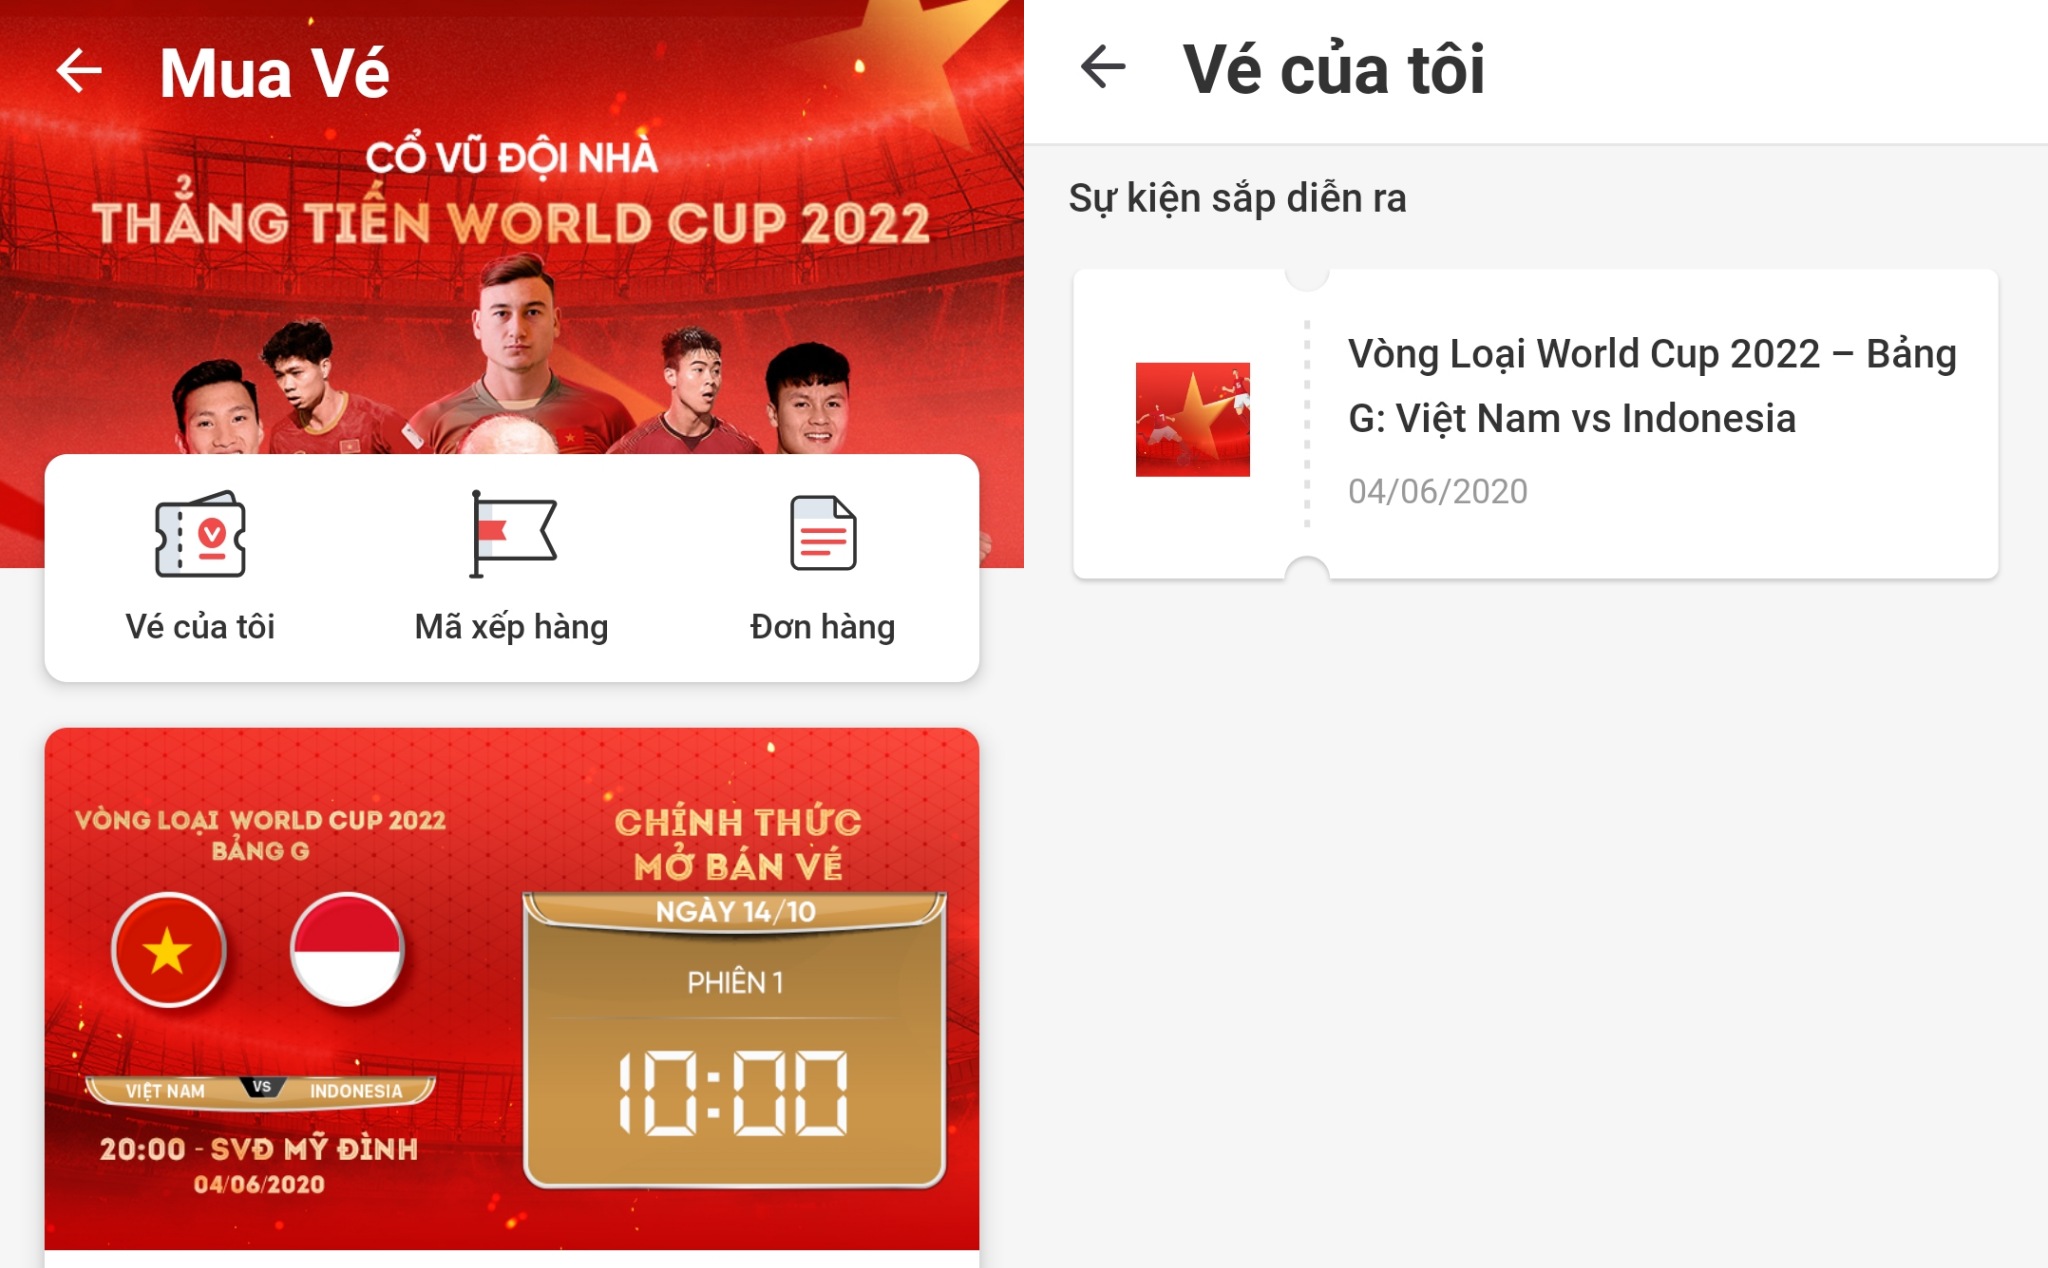 Chia sẻ kinh nghiệm săn vé bóng đá vòng loại World Cup 2022 trên VinID